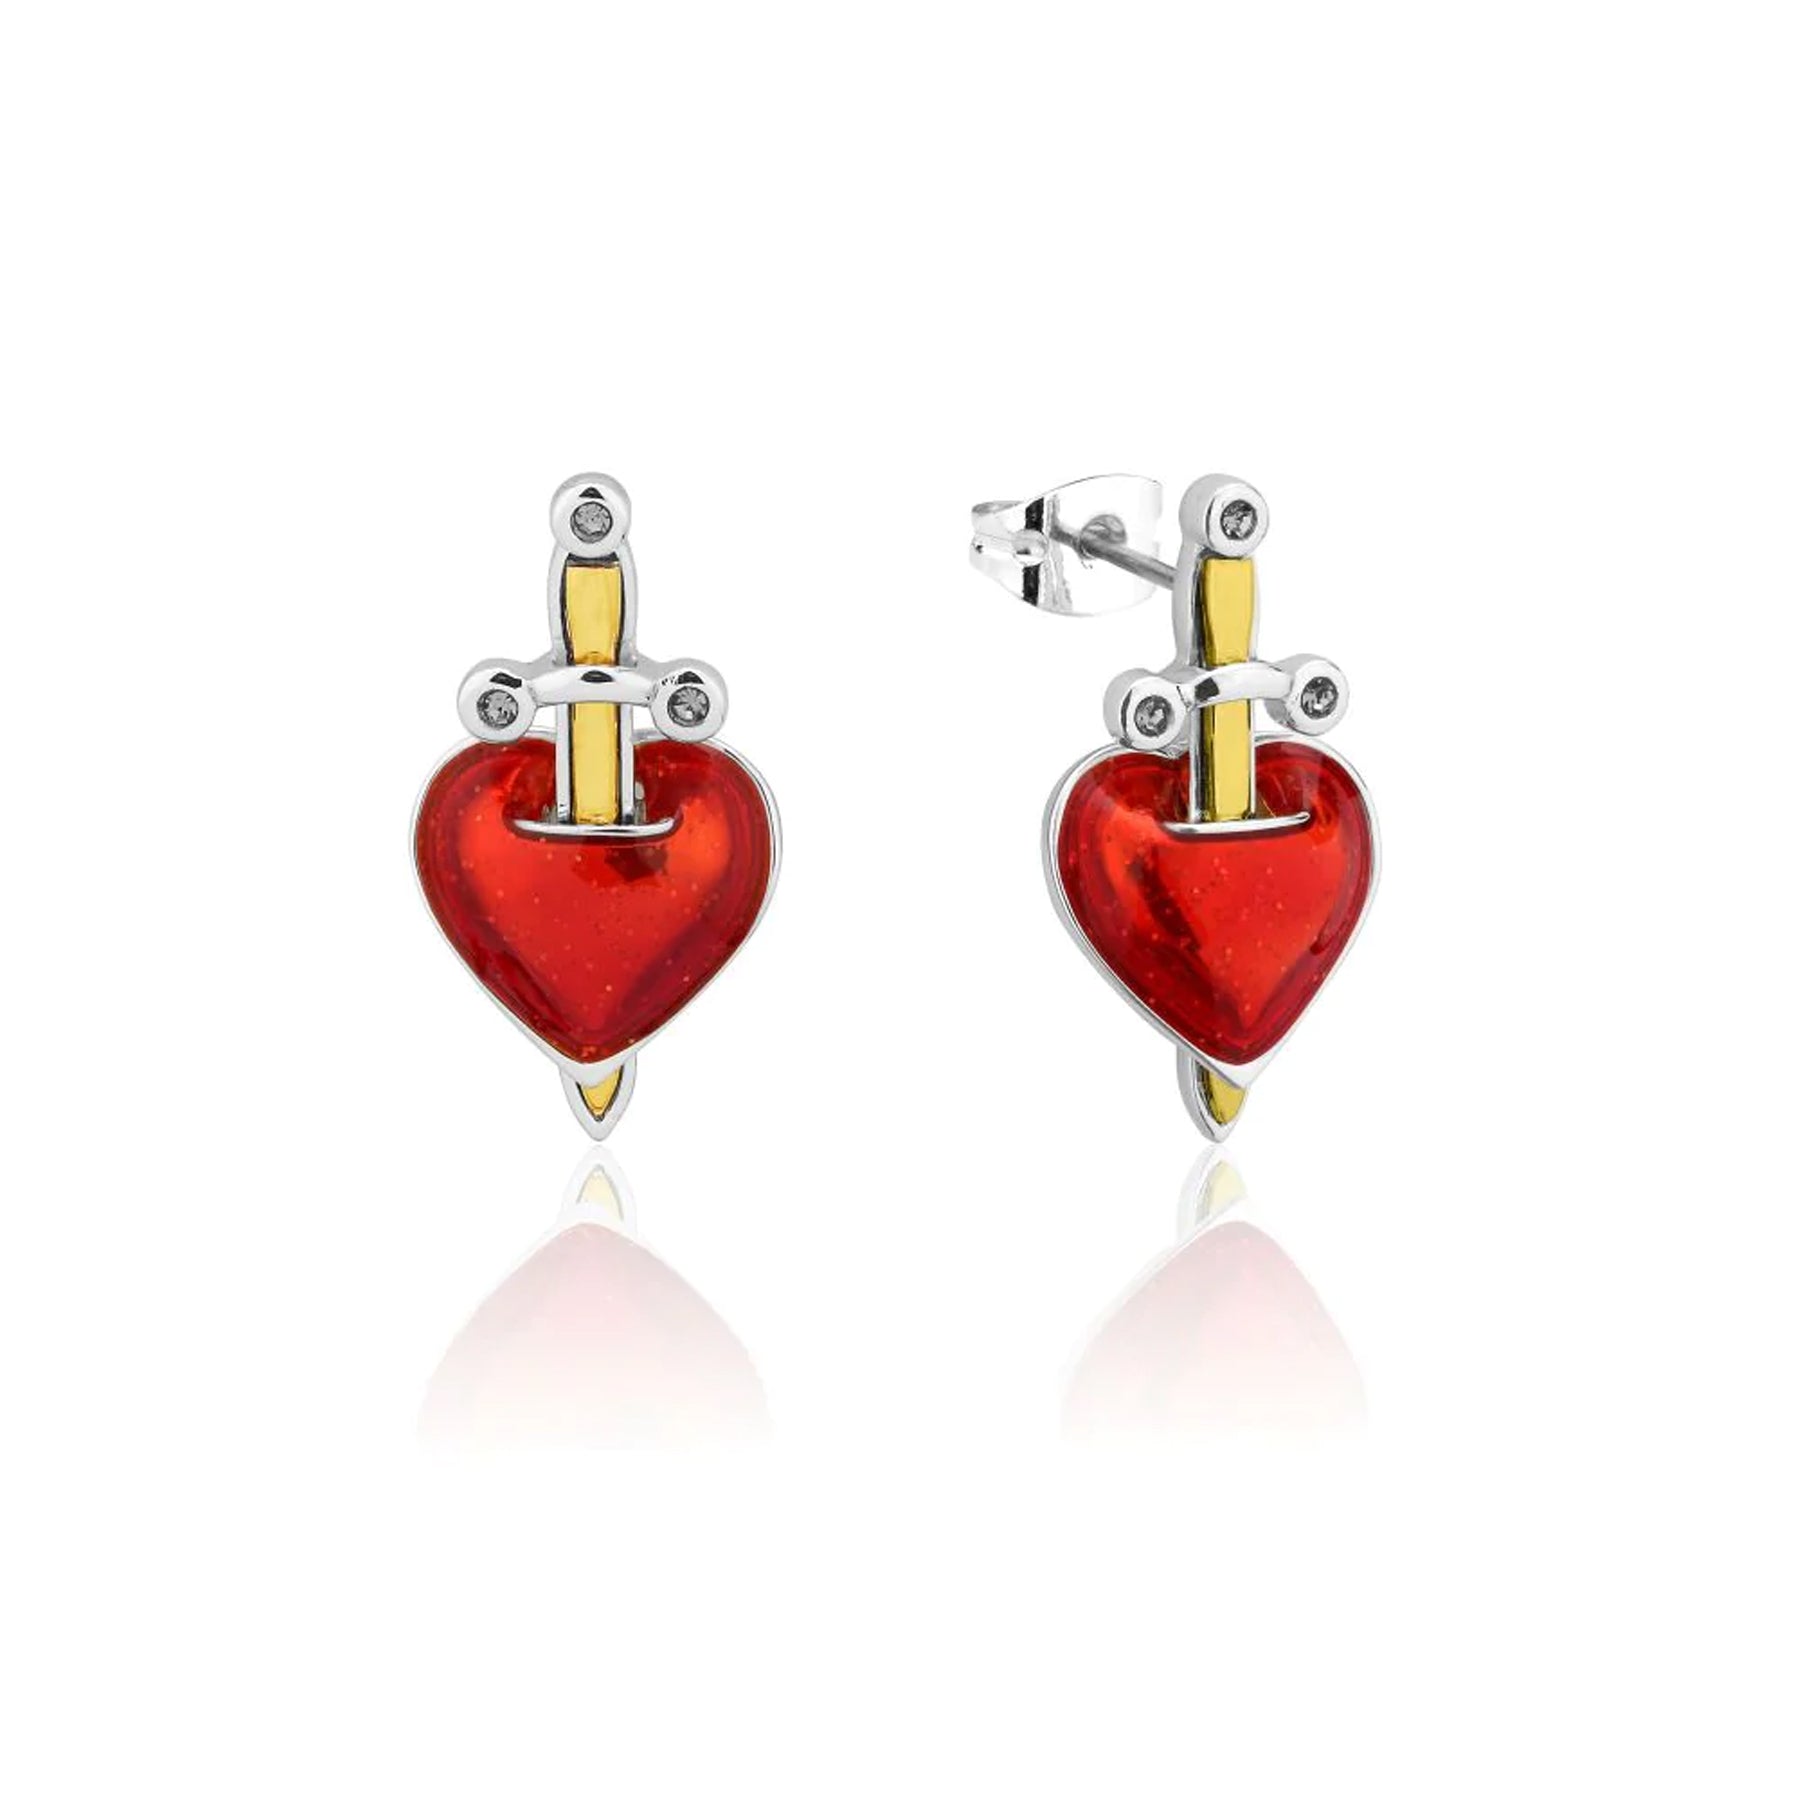 Disney Evil Queen Heart & Dagger Stud Earrings - White Gold